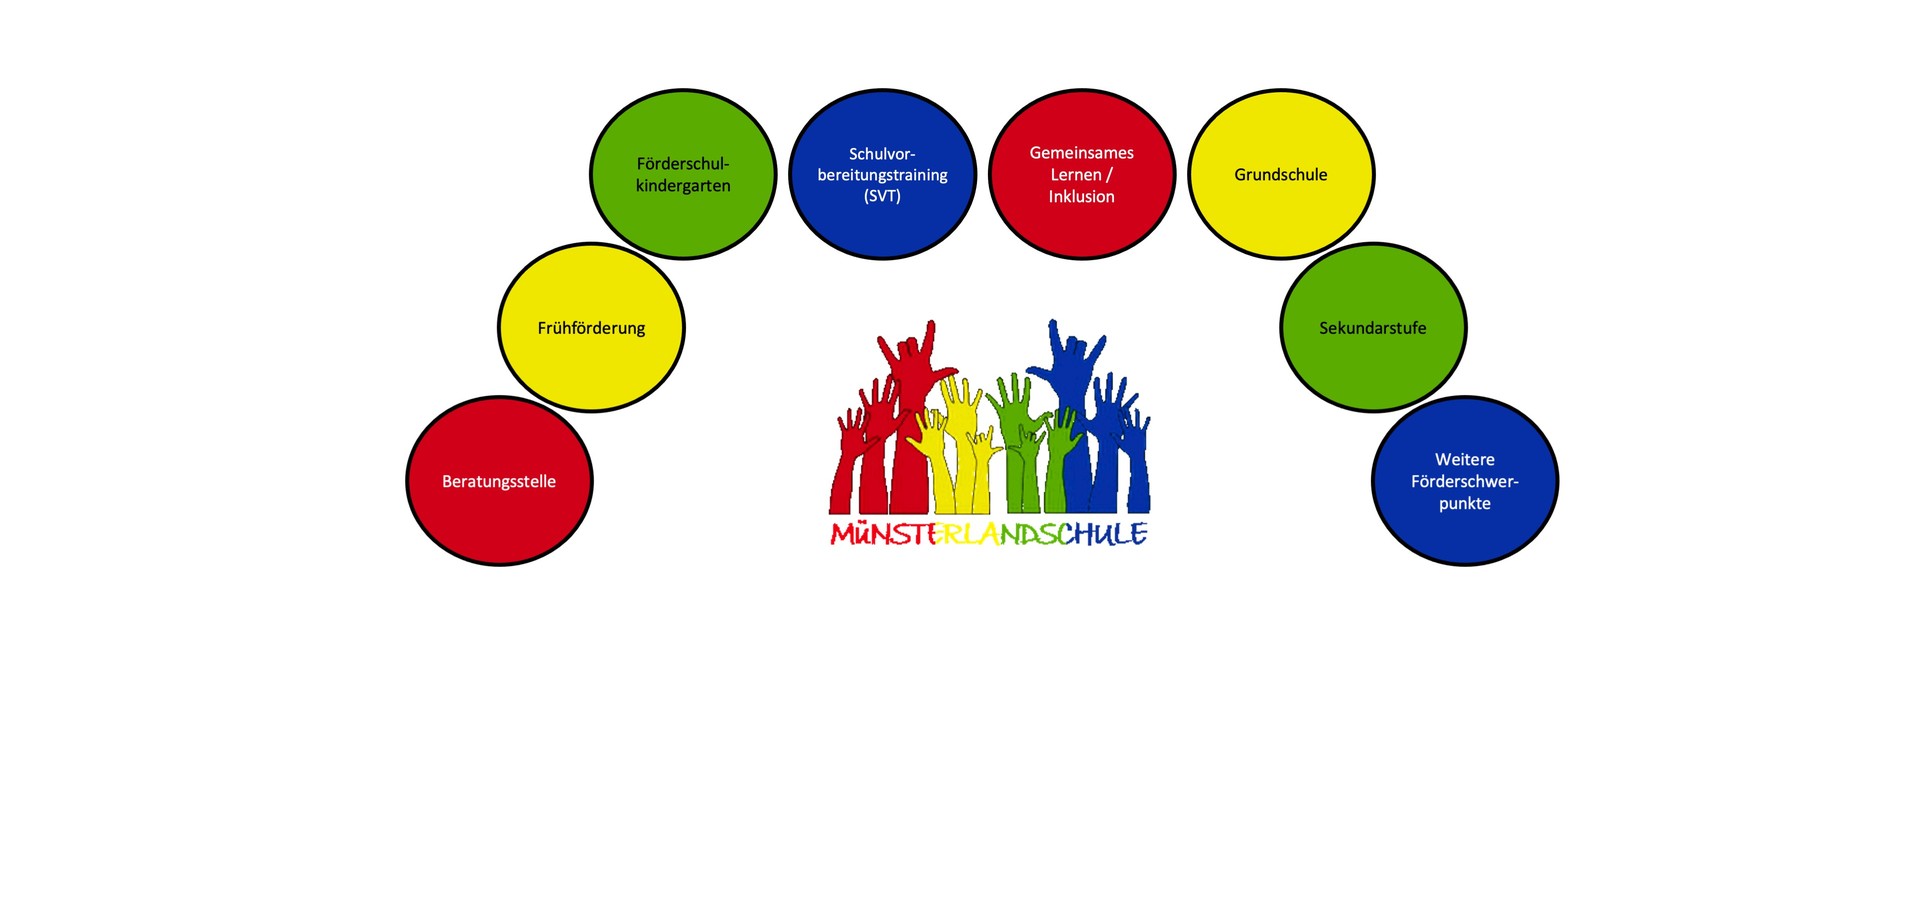 Schaubild mit Logo der Schule in der Mitte, rundherum 8 verschiedenfarbige Kreise, die die Bezeichnungen der verschiedenen Schulabteilungen enthalten